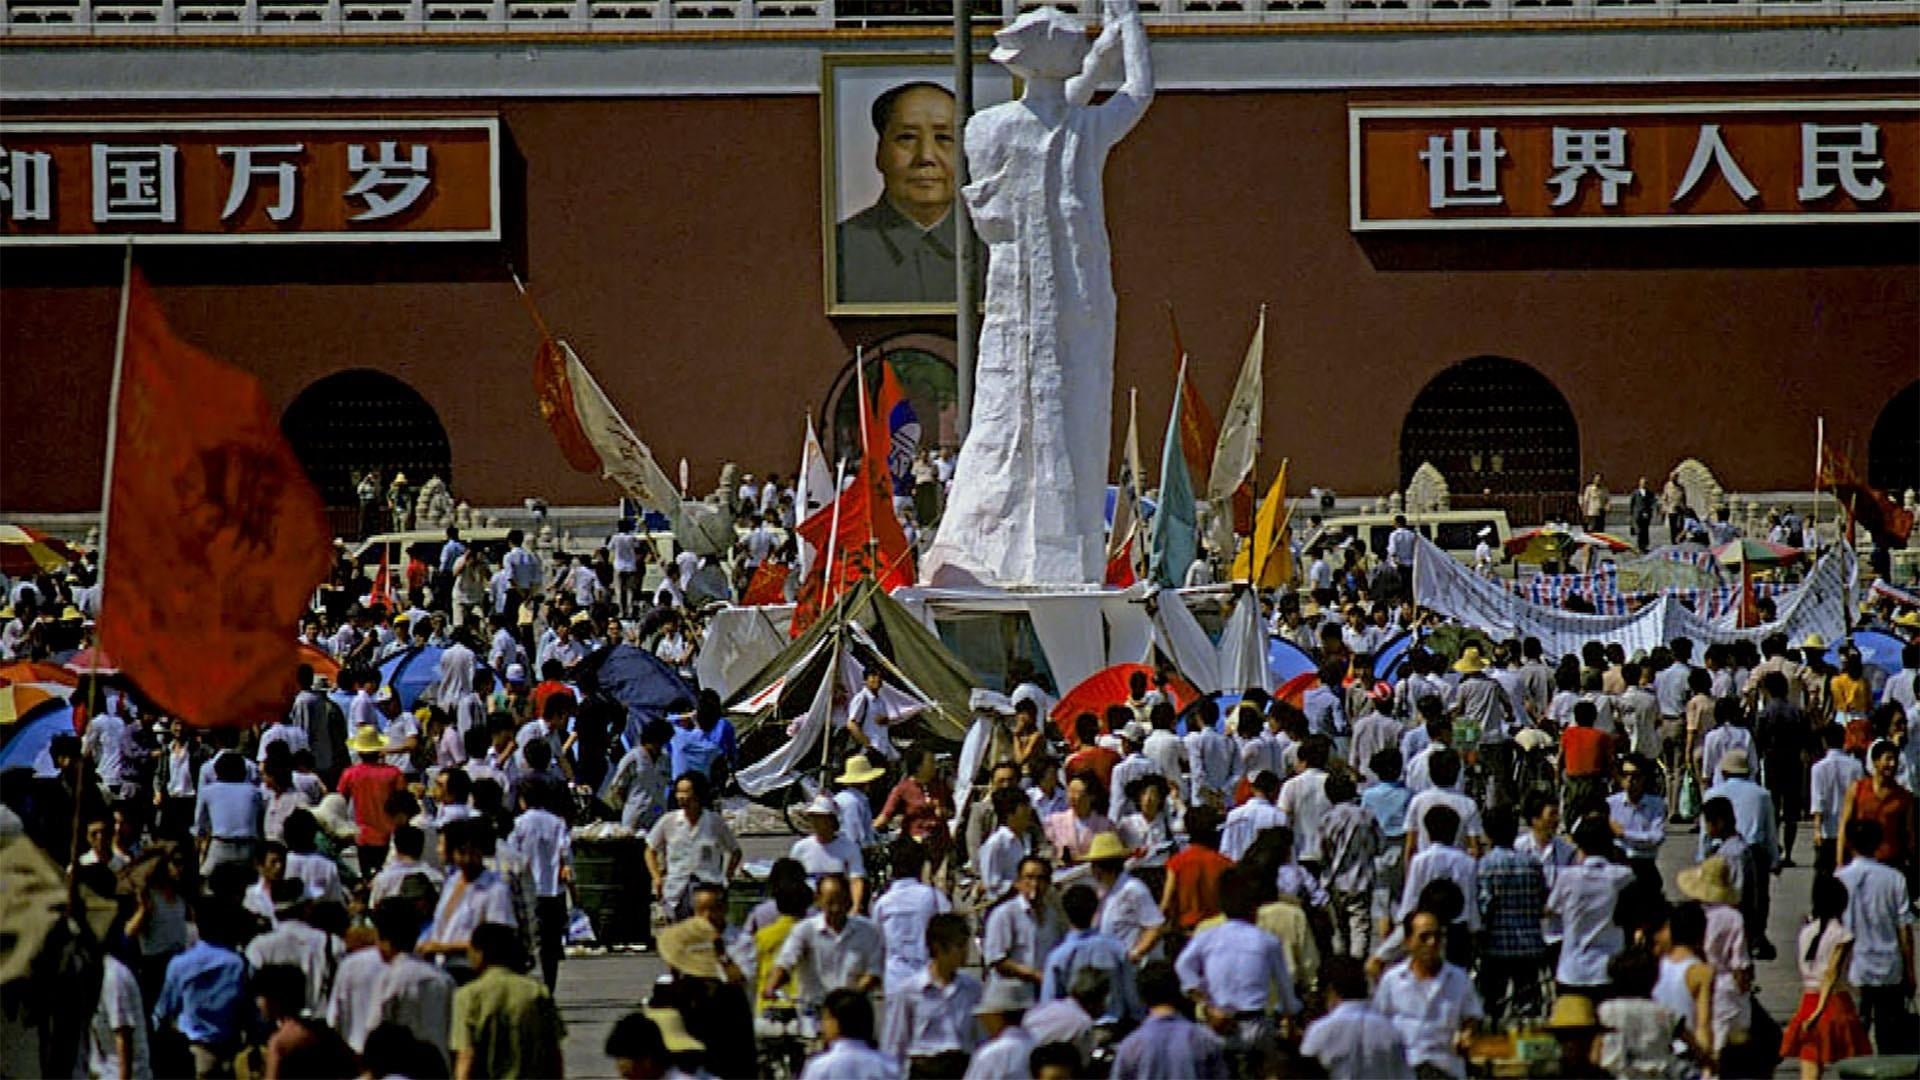 Tiananmen : le peuple contre le parti